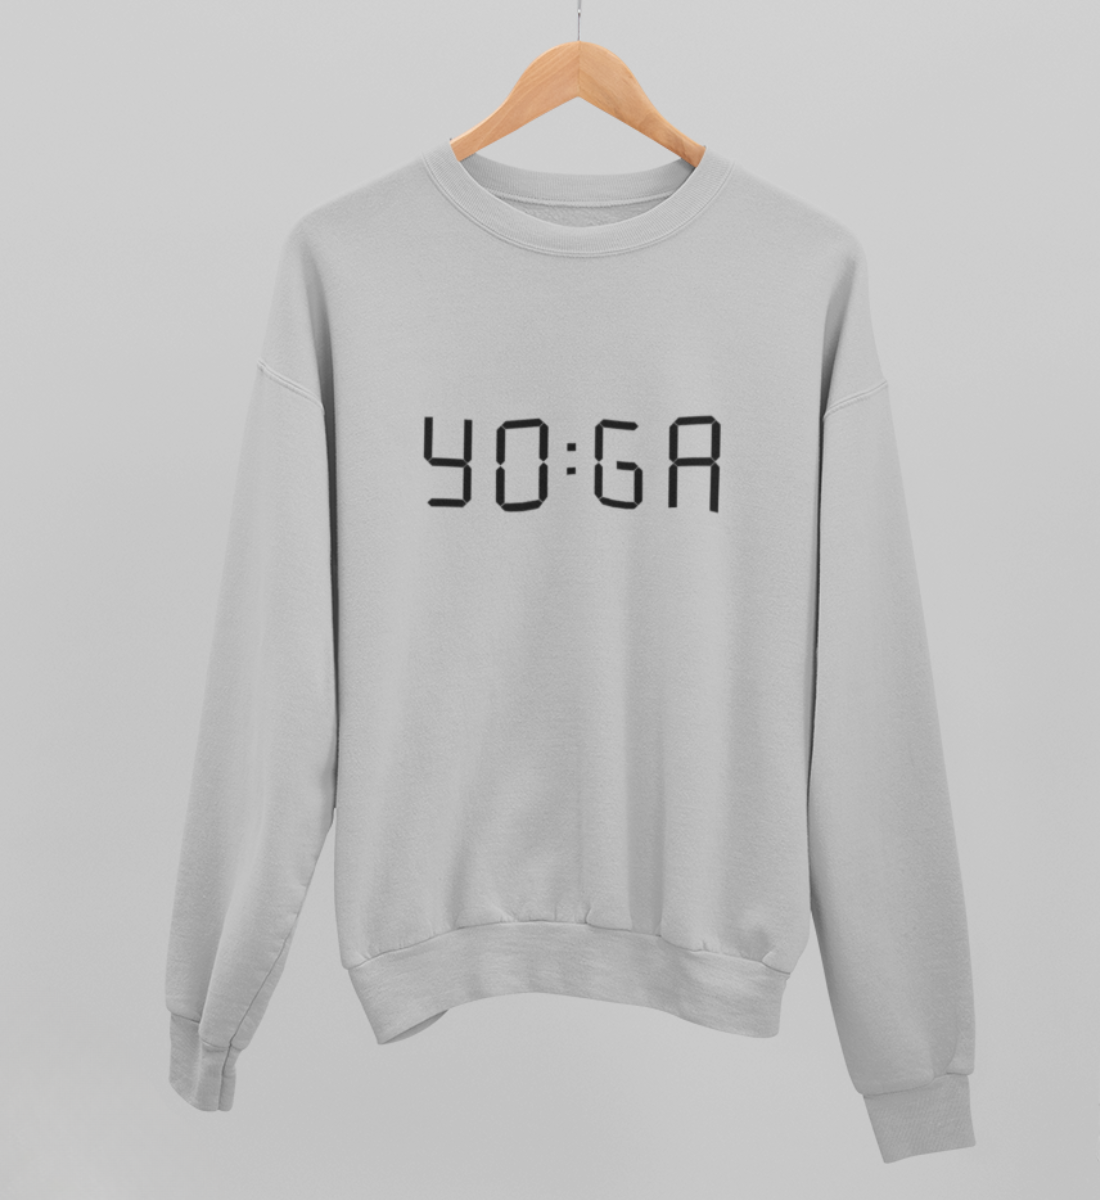 zeit für yoga l yoga sweatshirt hellgrau l pullover bio-baumwolle l nachhaltige yoga kleidung l natürliche und ökologische materialien aus nachhaltiger produktion l yoga mode online shoppen